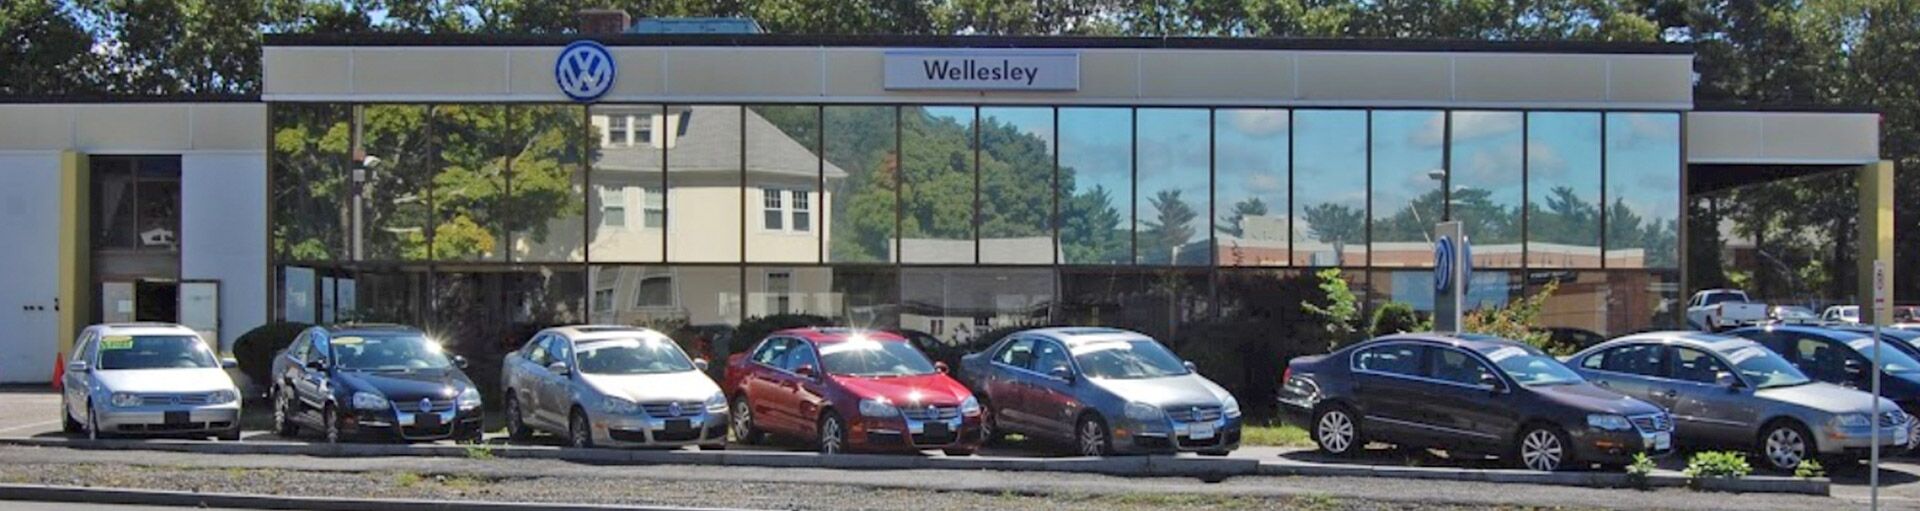 Wellesley Volkswagen Two-Wheel Alignment